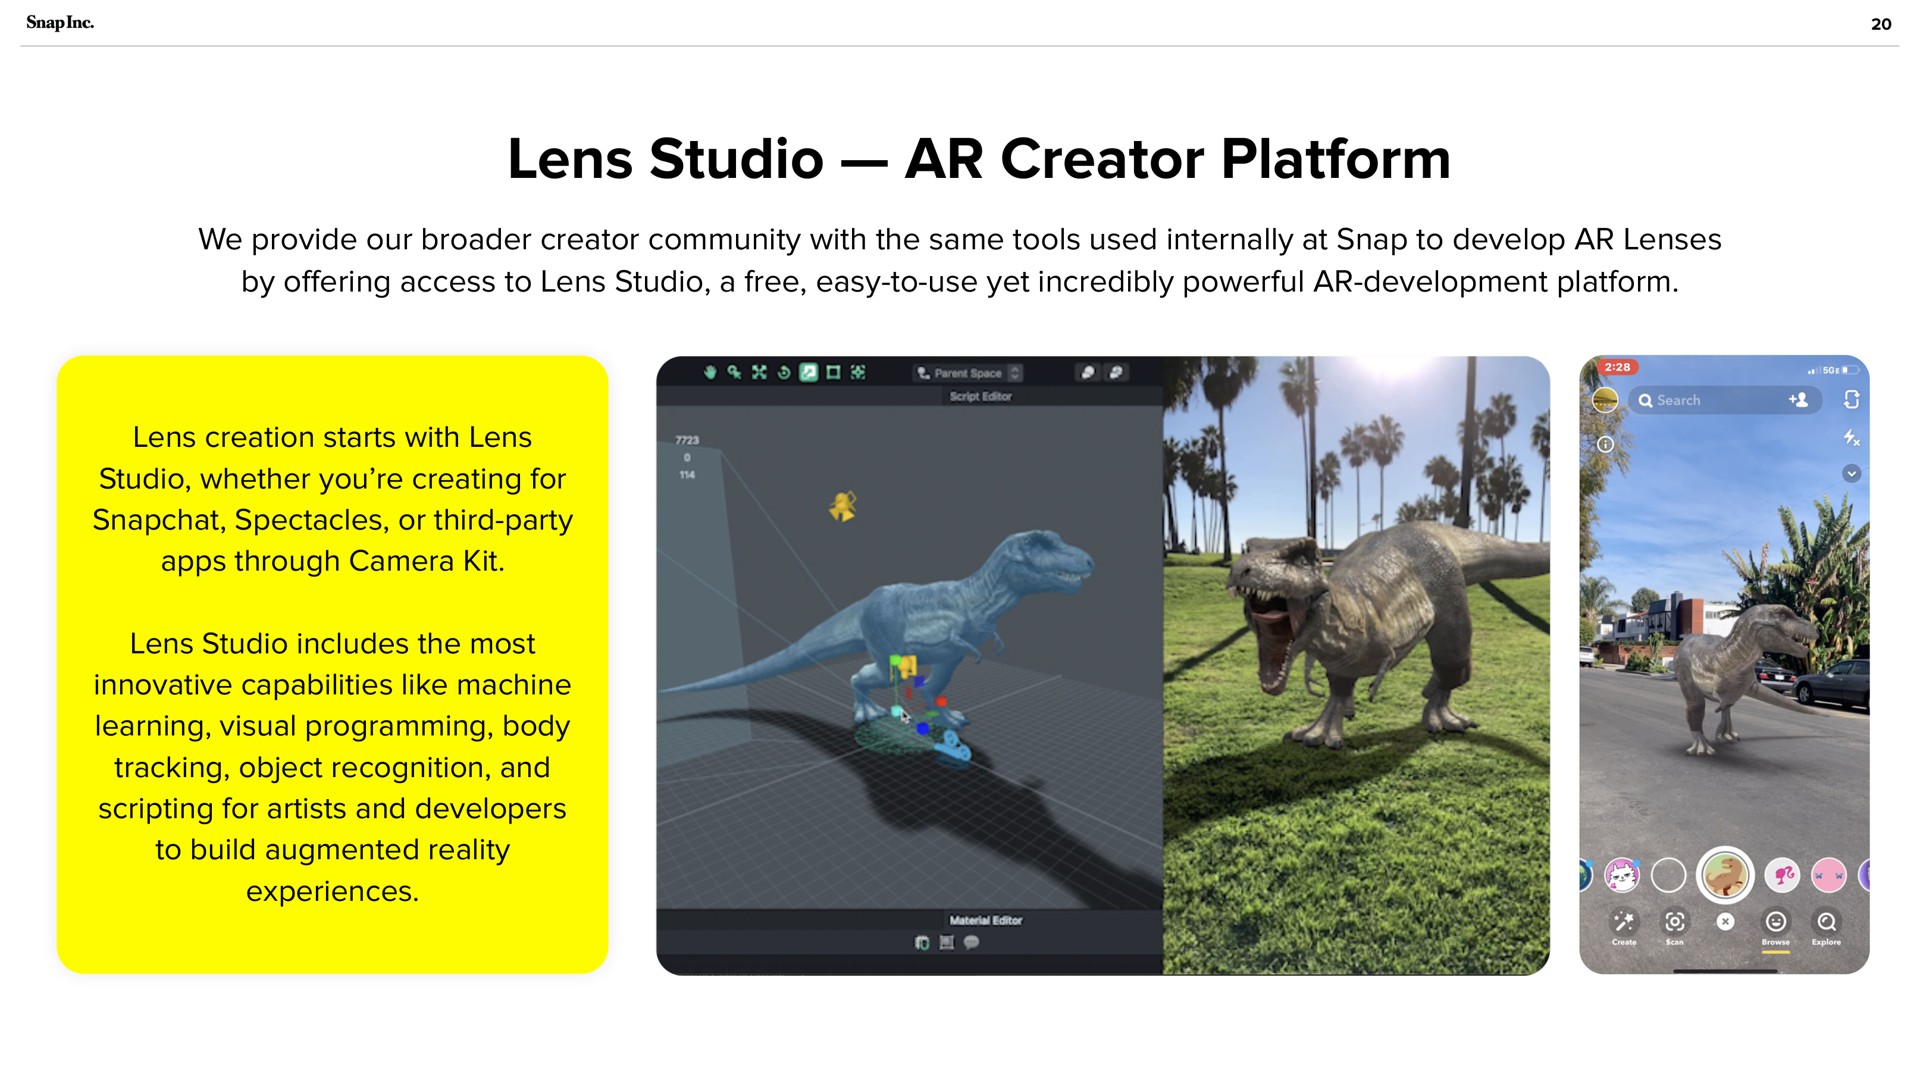 lens studio creator platform | Snap Inc